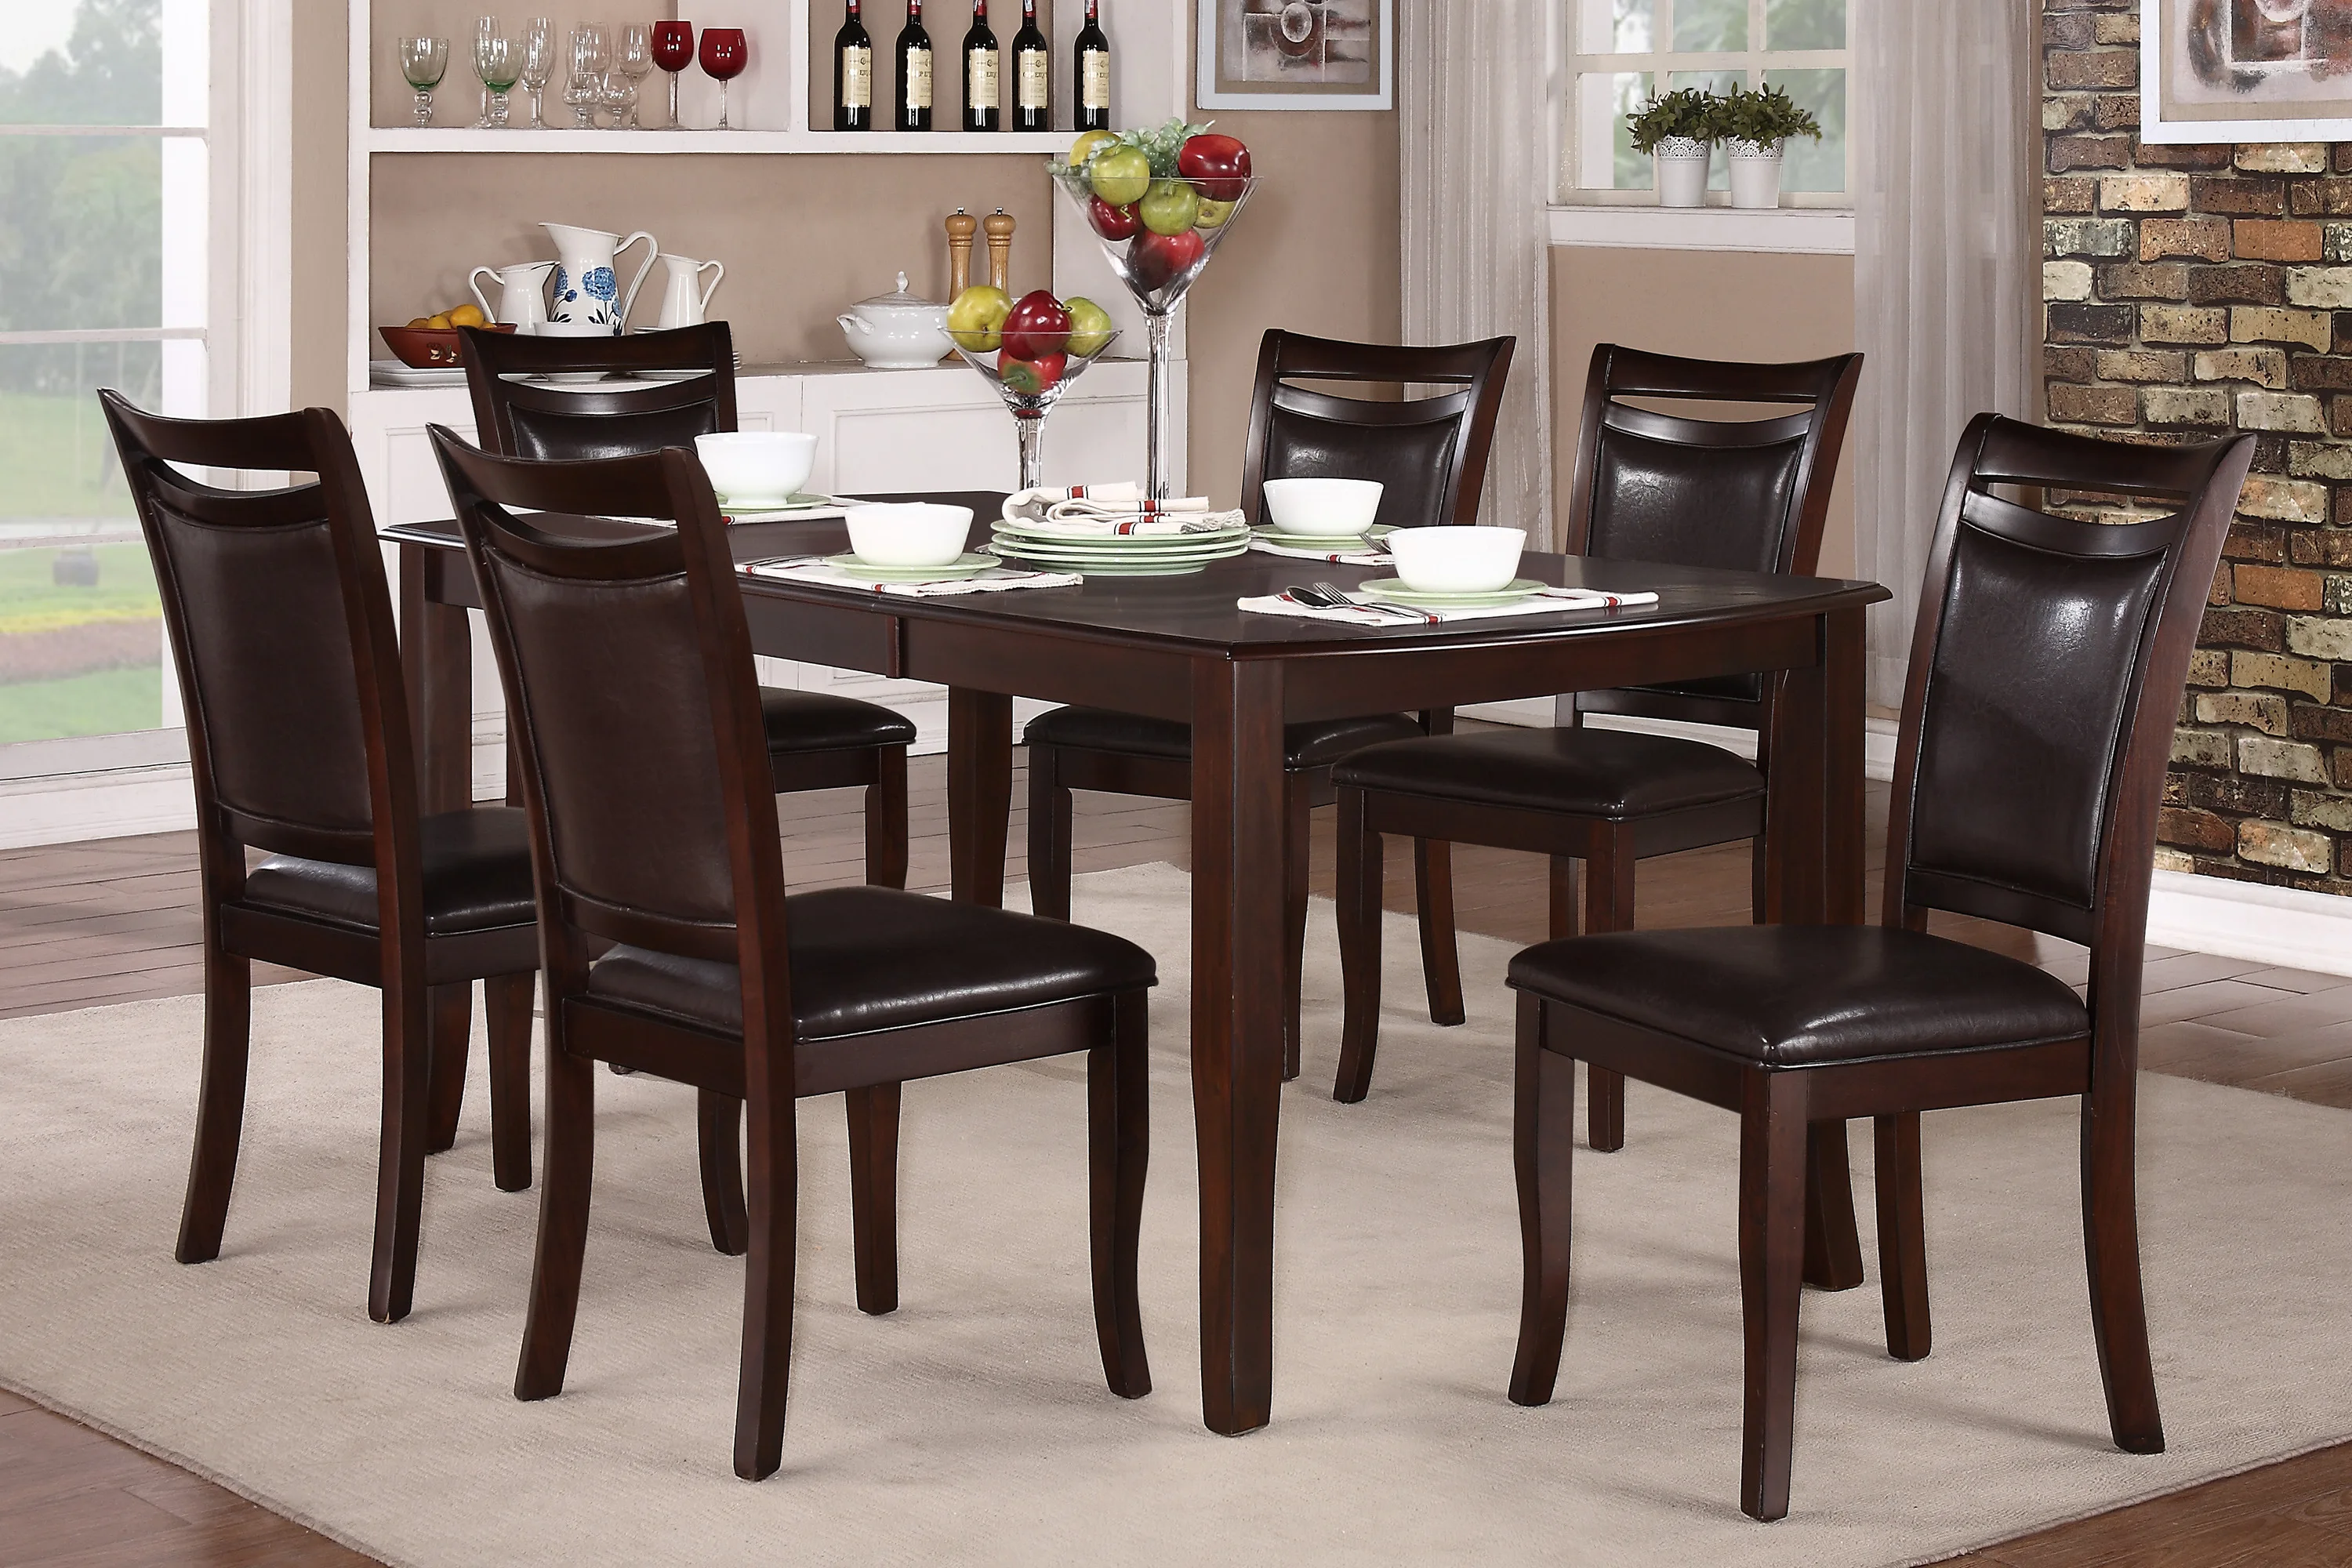 Koyu Kiraz Kaplama Şık Yemek 7 adet Set Masa w Uzatma Yaprağı 6x Yan Sandalyeler Basit Tasarım yemek odası mobilyası